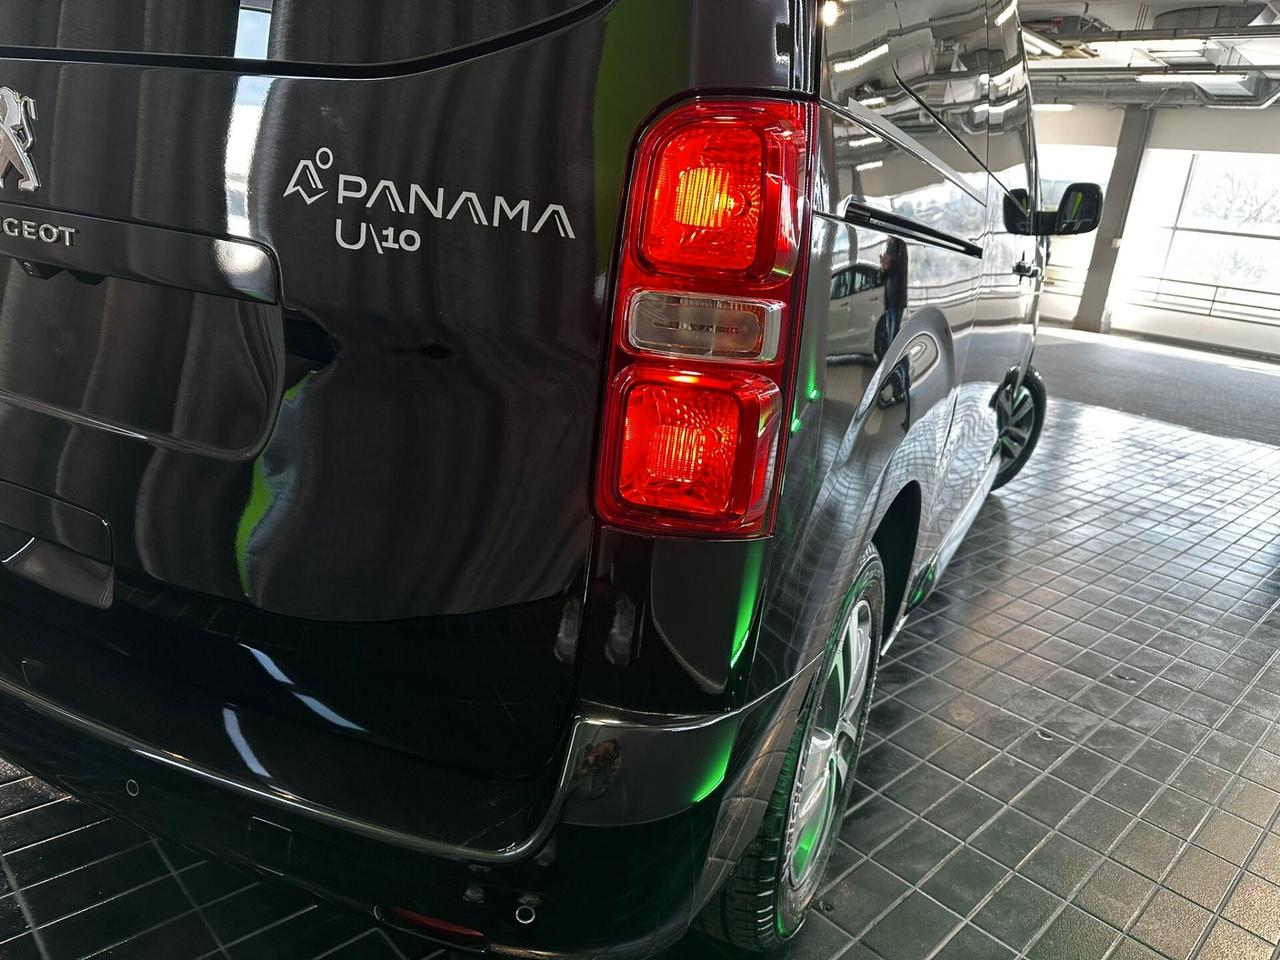 Peugeot PANAMA U10